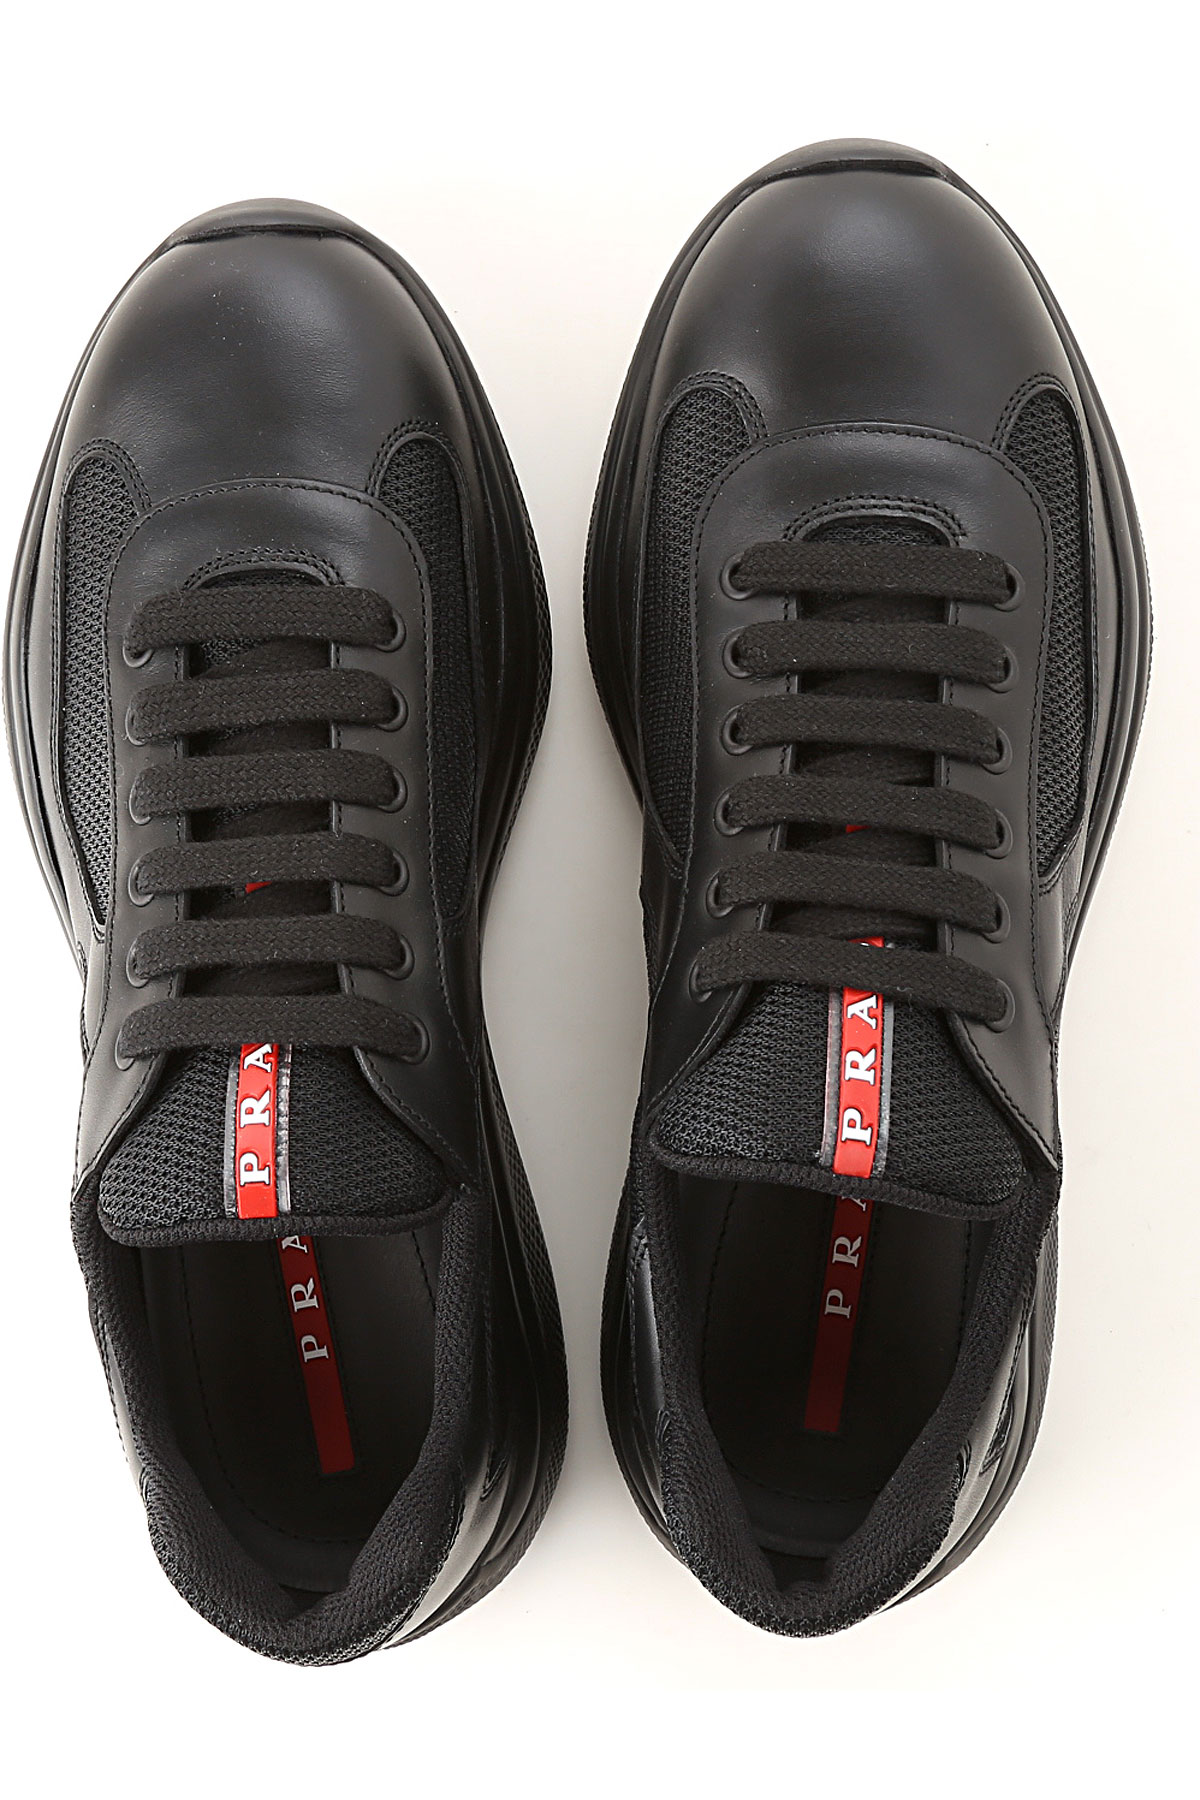 Mens Shoes Prada, Style code: 4e3400-6gw-f0002